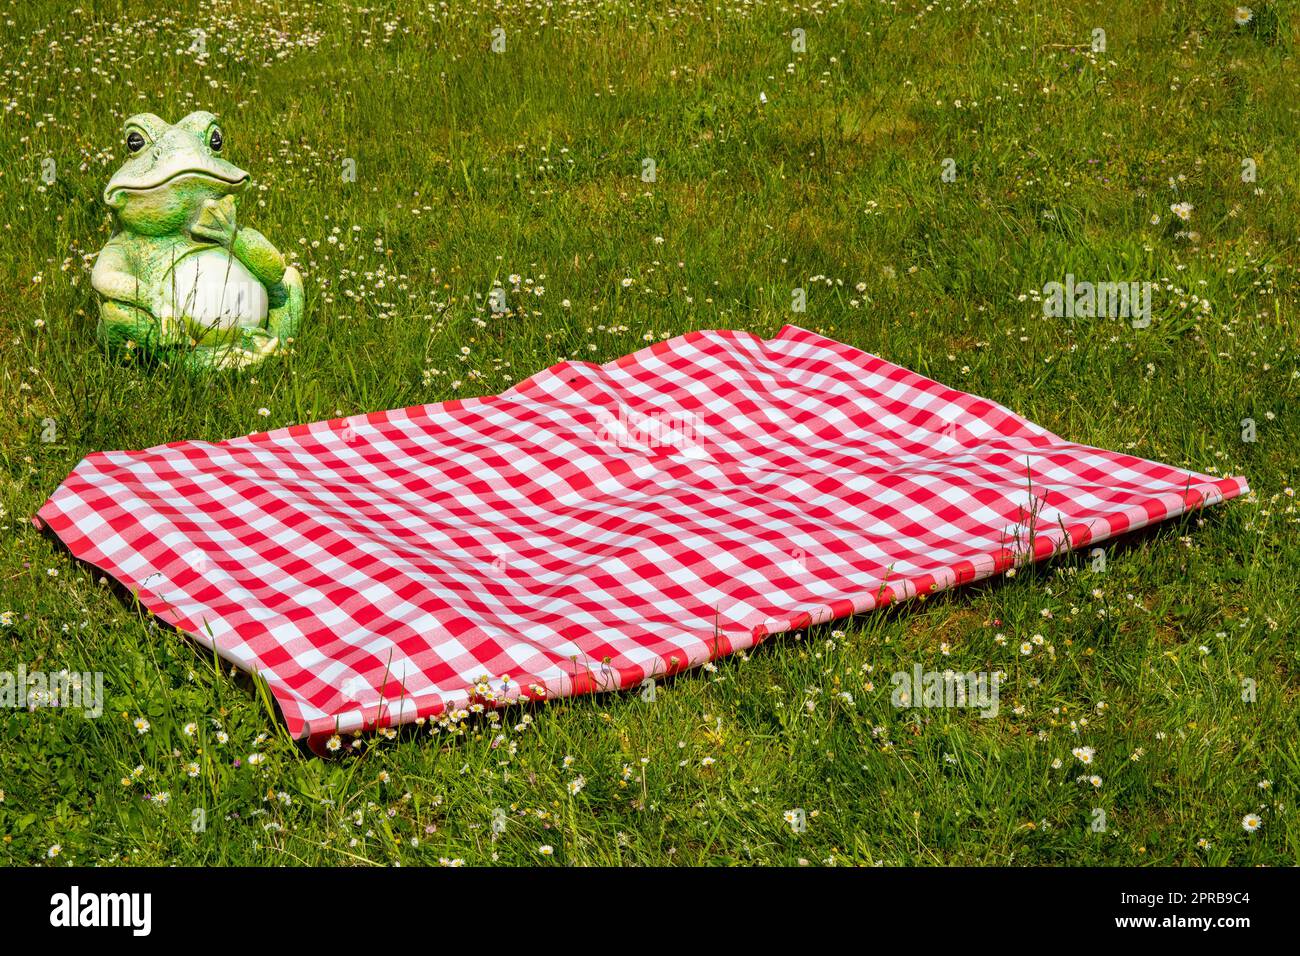 Rote Picknickdecke. Rotes kariertes Picknicktuch auf einer blühenden Wiese mit Gänseblümchen. Schöner Hintergrund für die Produktplatzierung oder -Montage. Frosch im Hintergrund. Stockfoto